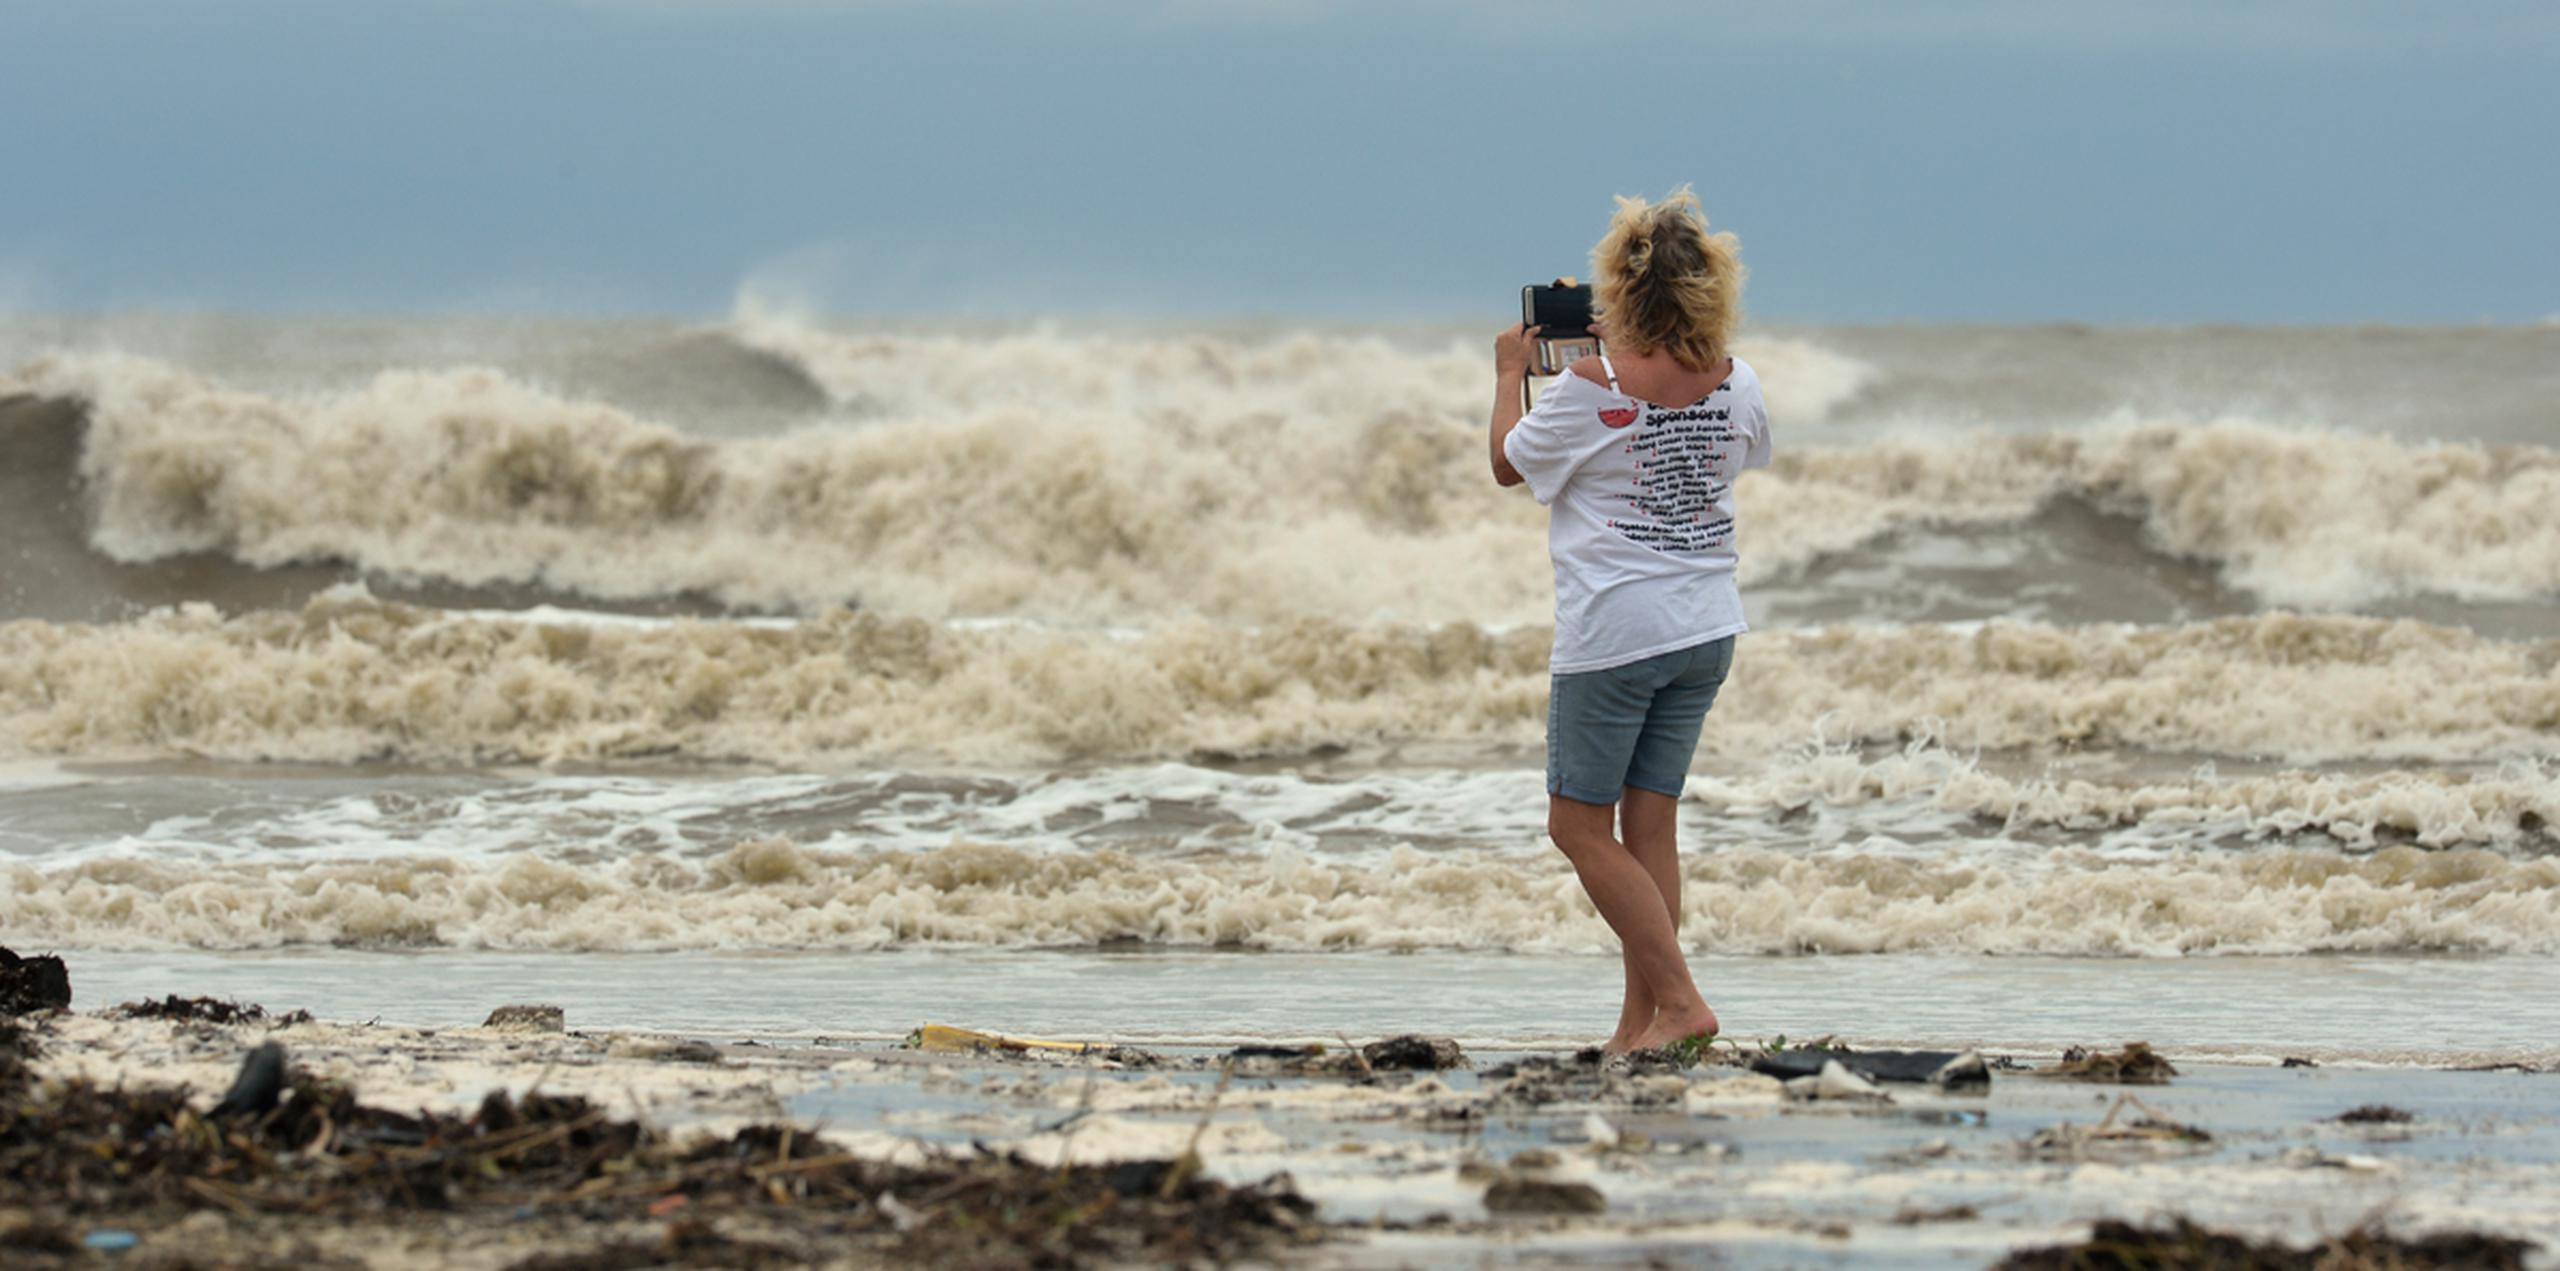 Tricia Hayes graba imágenes en la orilla antes de la llegada del tormenta tropical Cindy, en la península Bolivar, Texas. (AP)